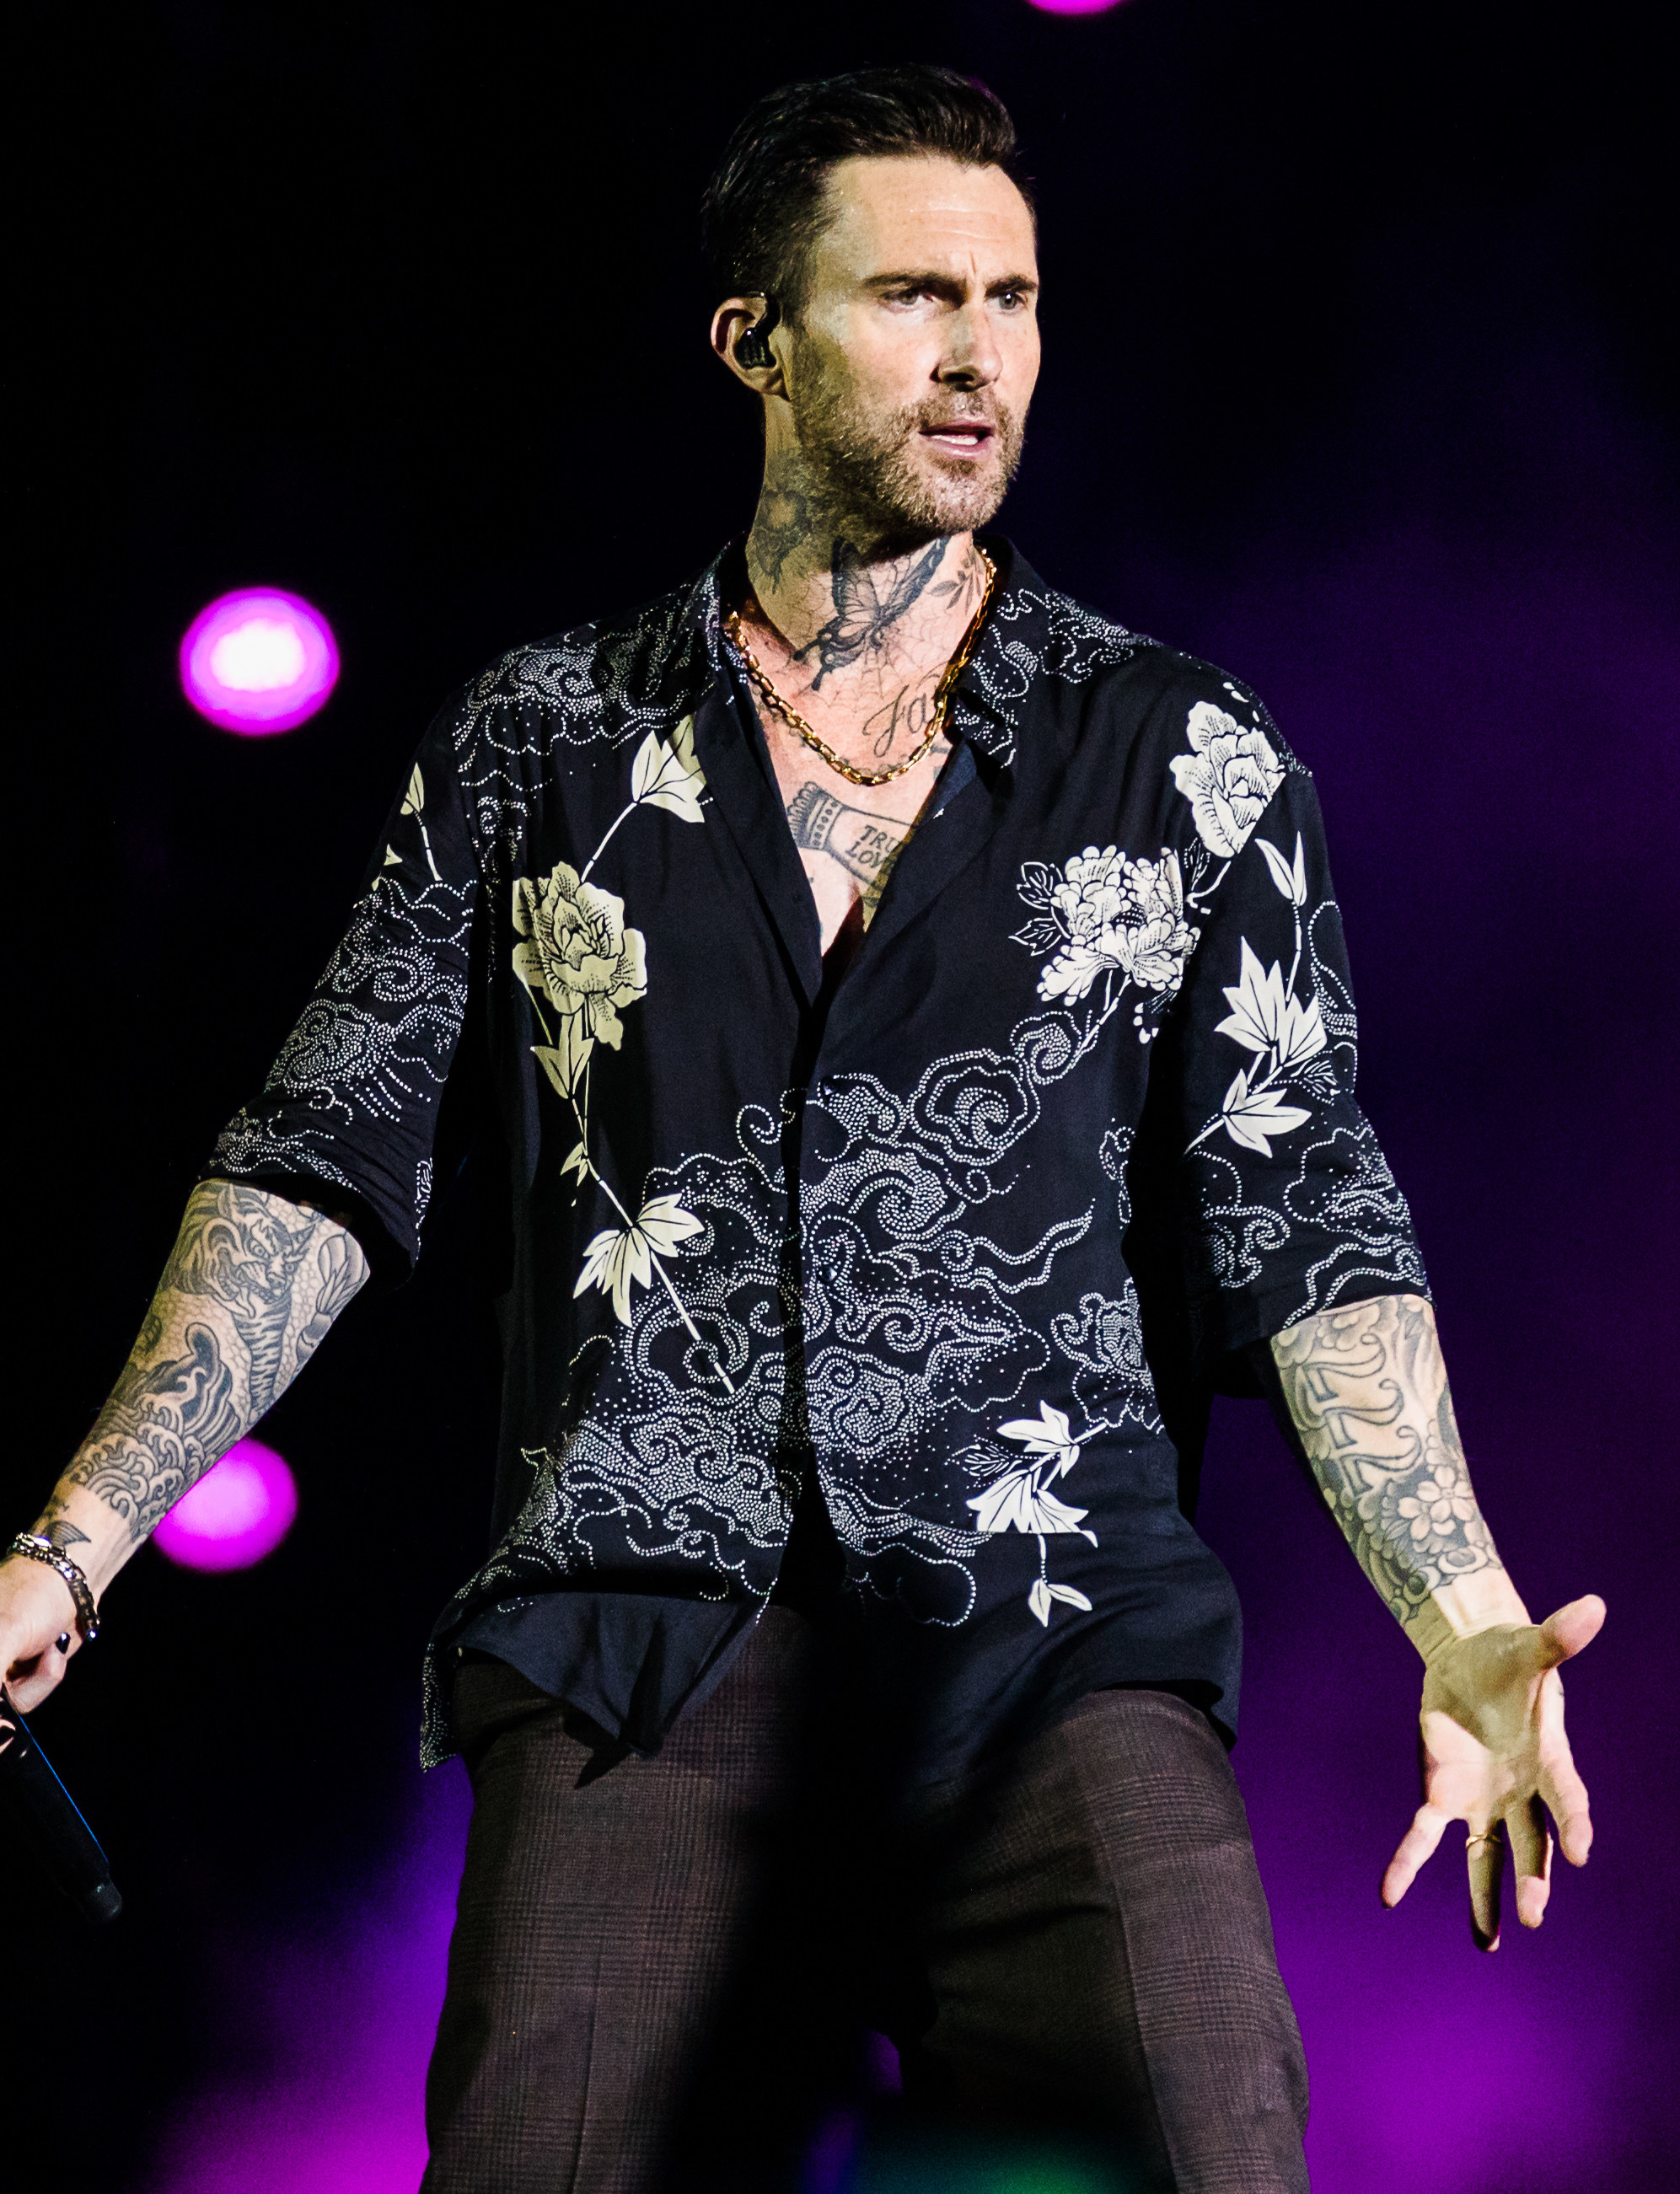 Levine on stage